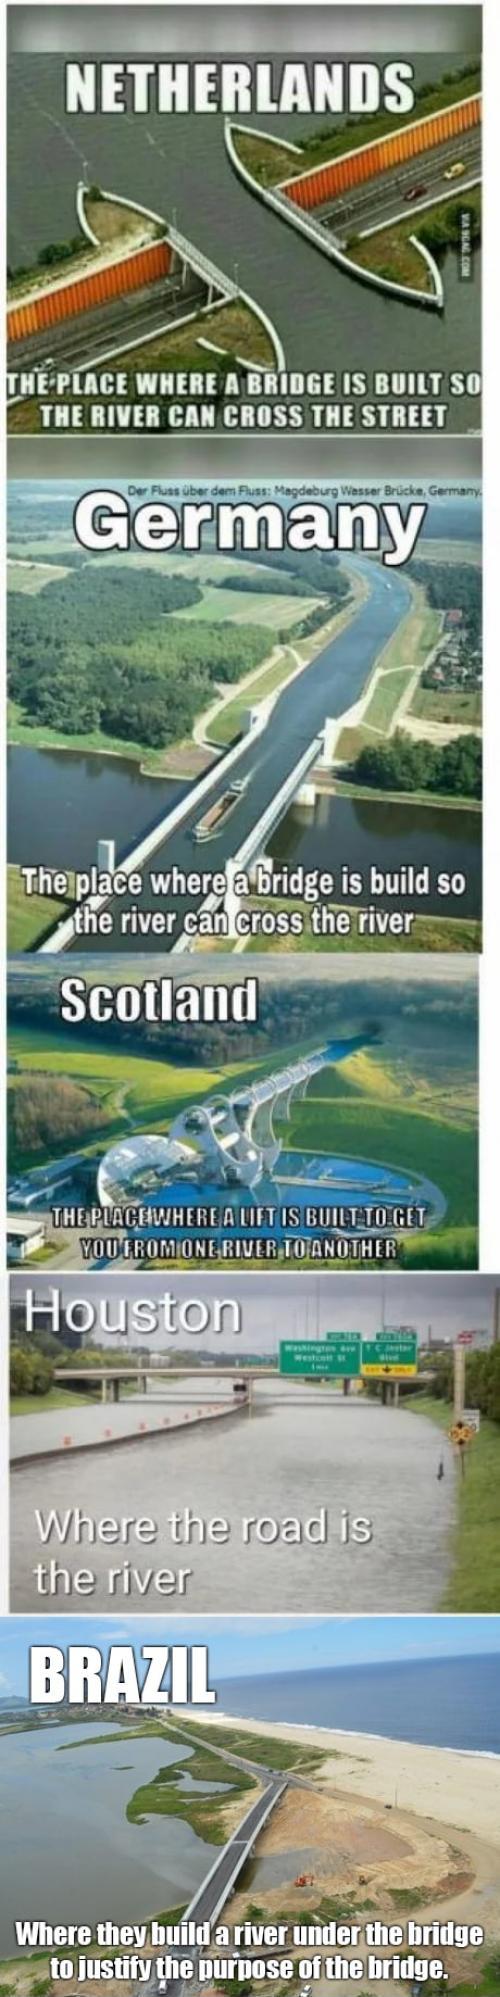 Different folks, different bridges